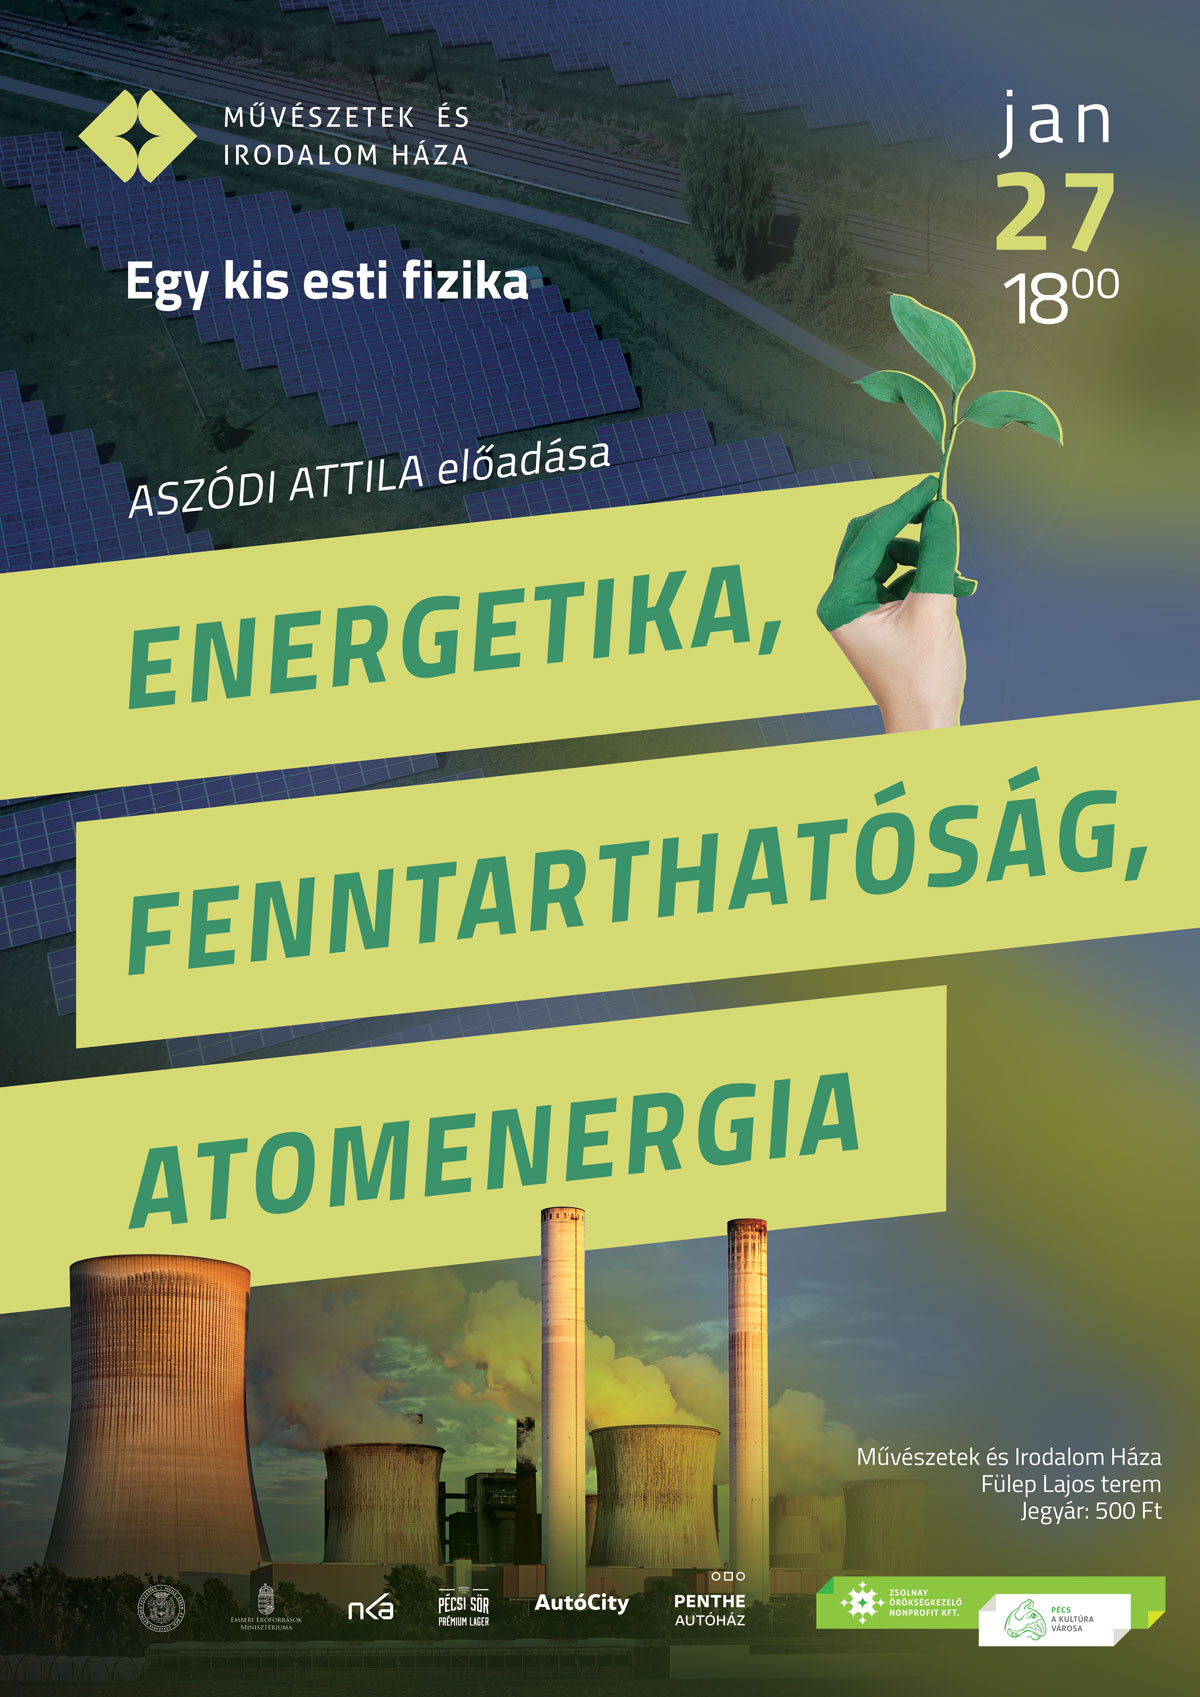 fizika_energetika_fenntarthatosag_atomenergia_januar2022